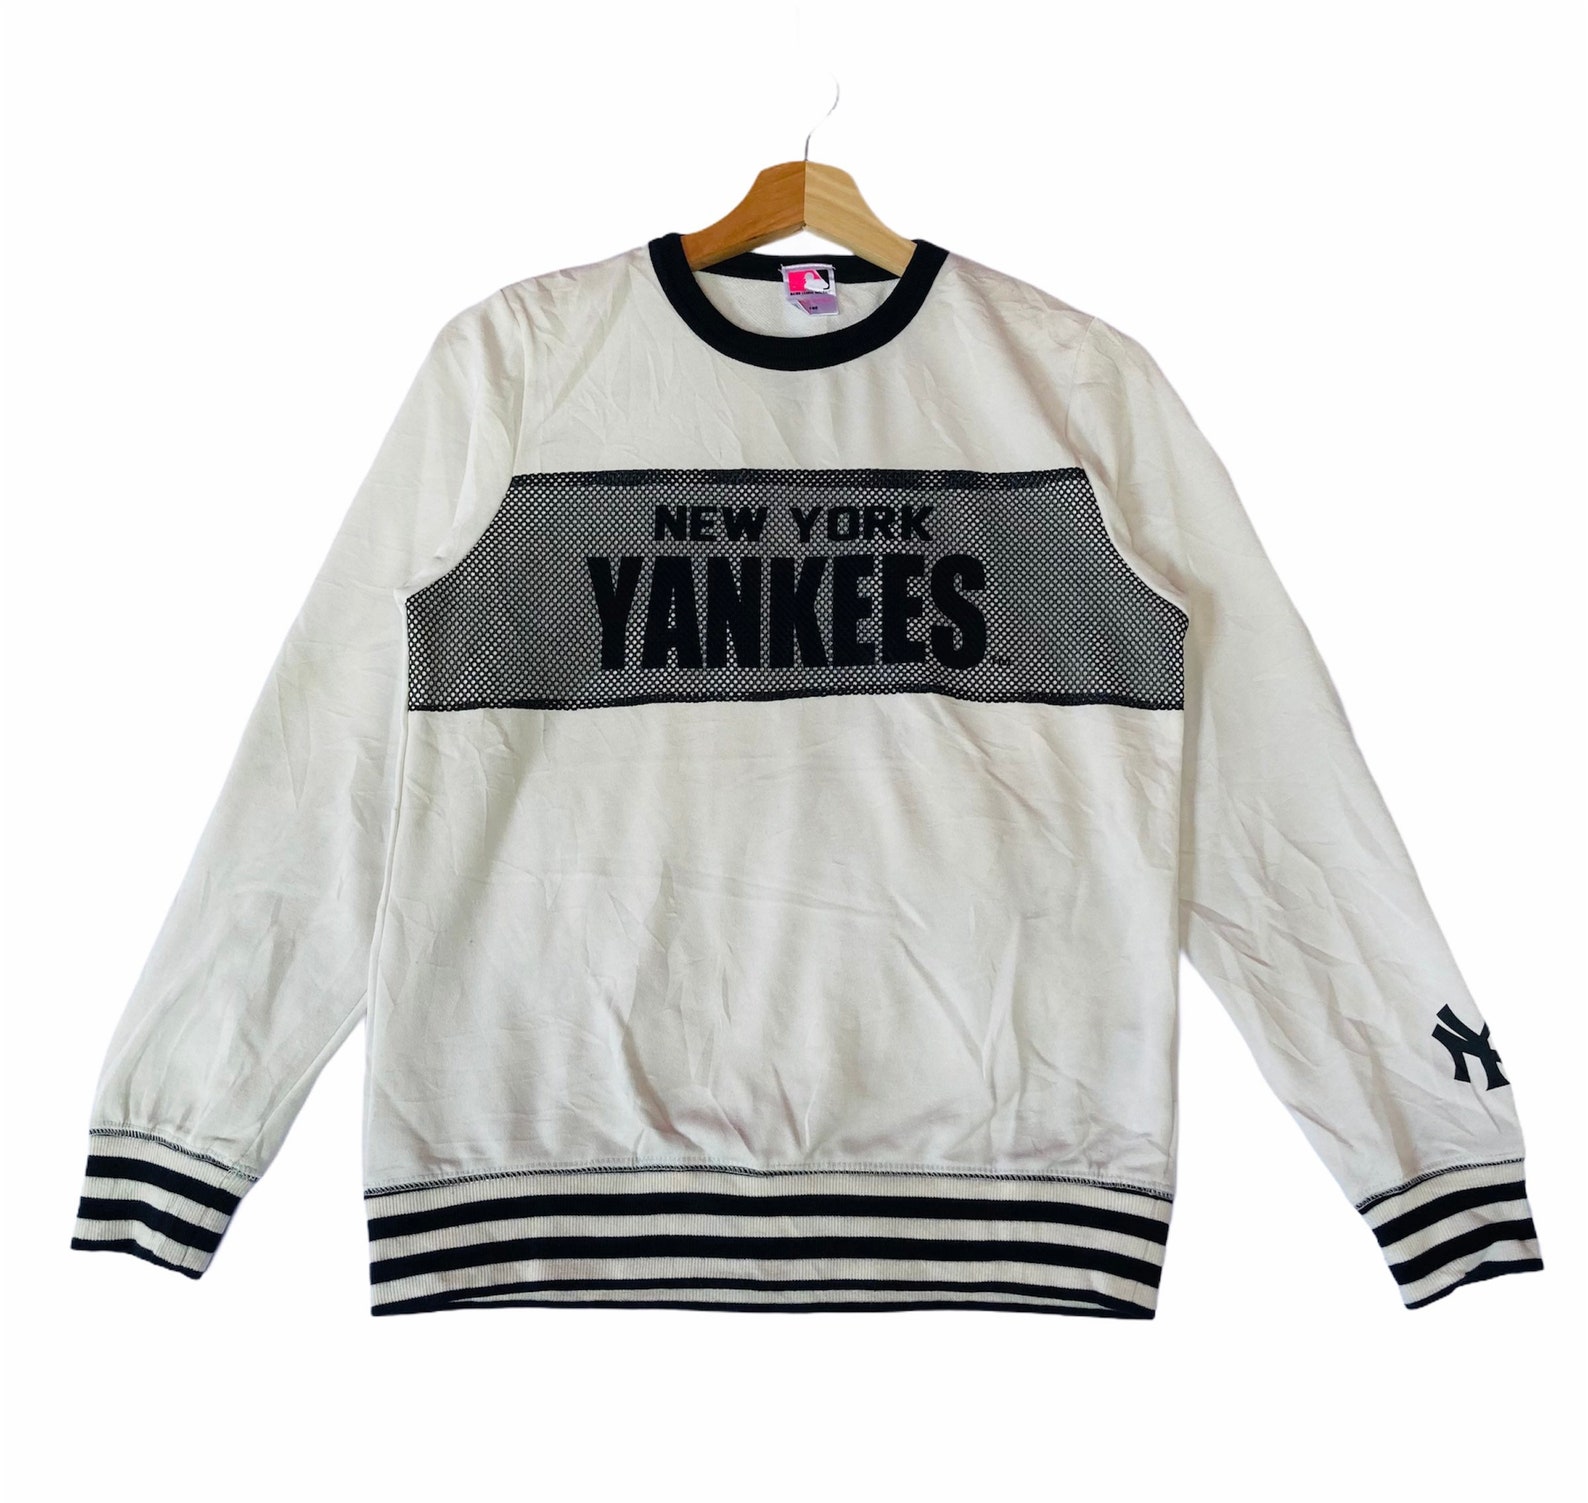 Vintage 90s New York Yankees Sweatshirt Yankees Crewneck | Etsy